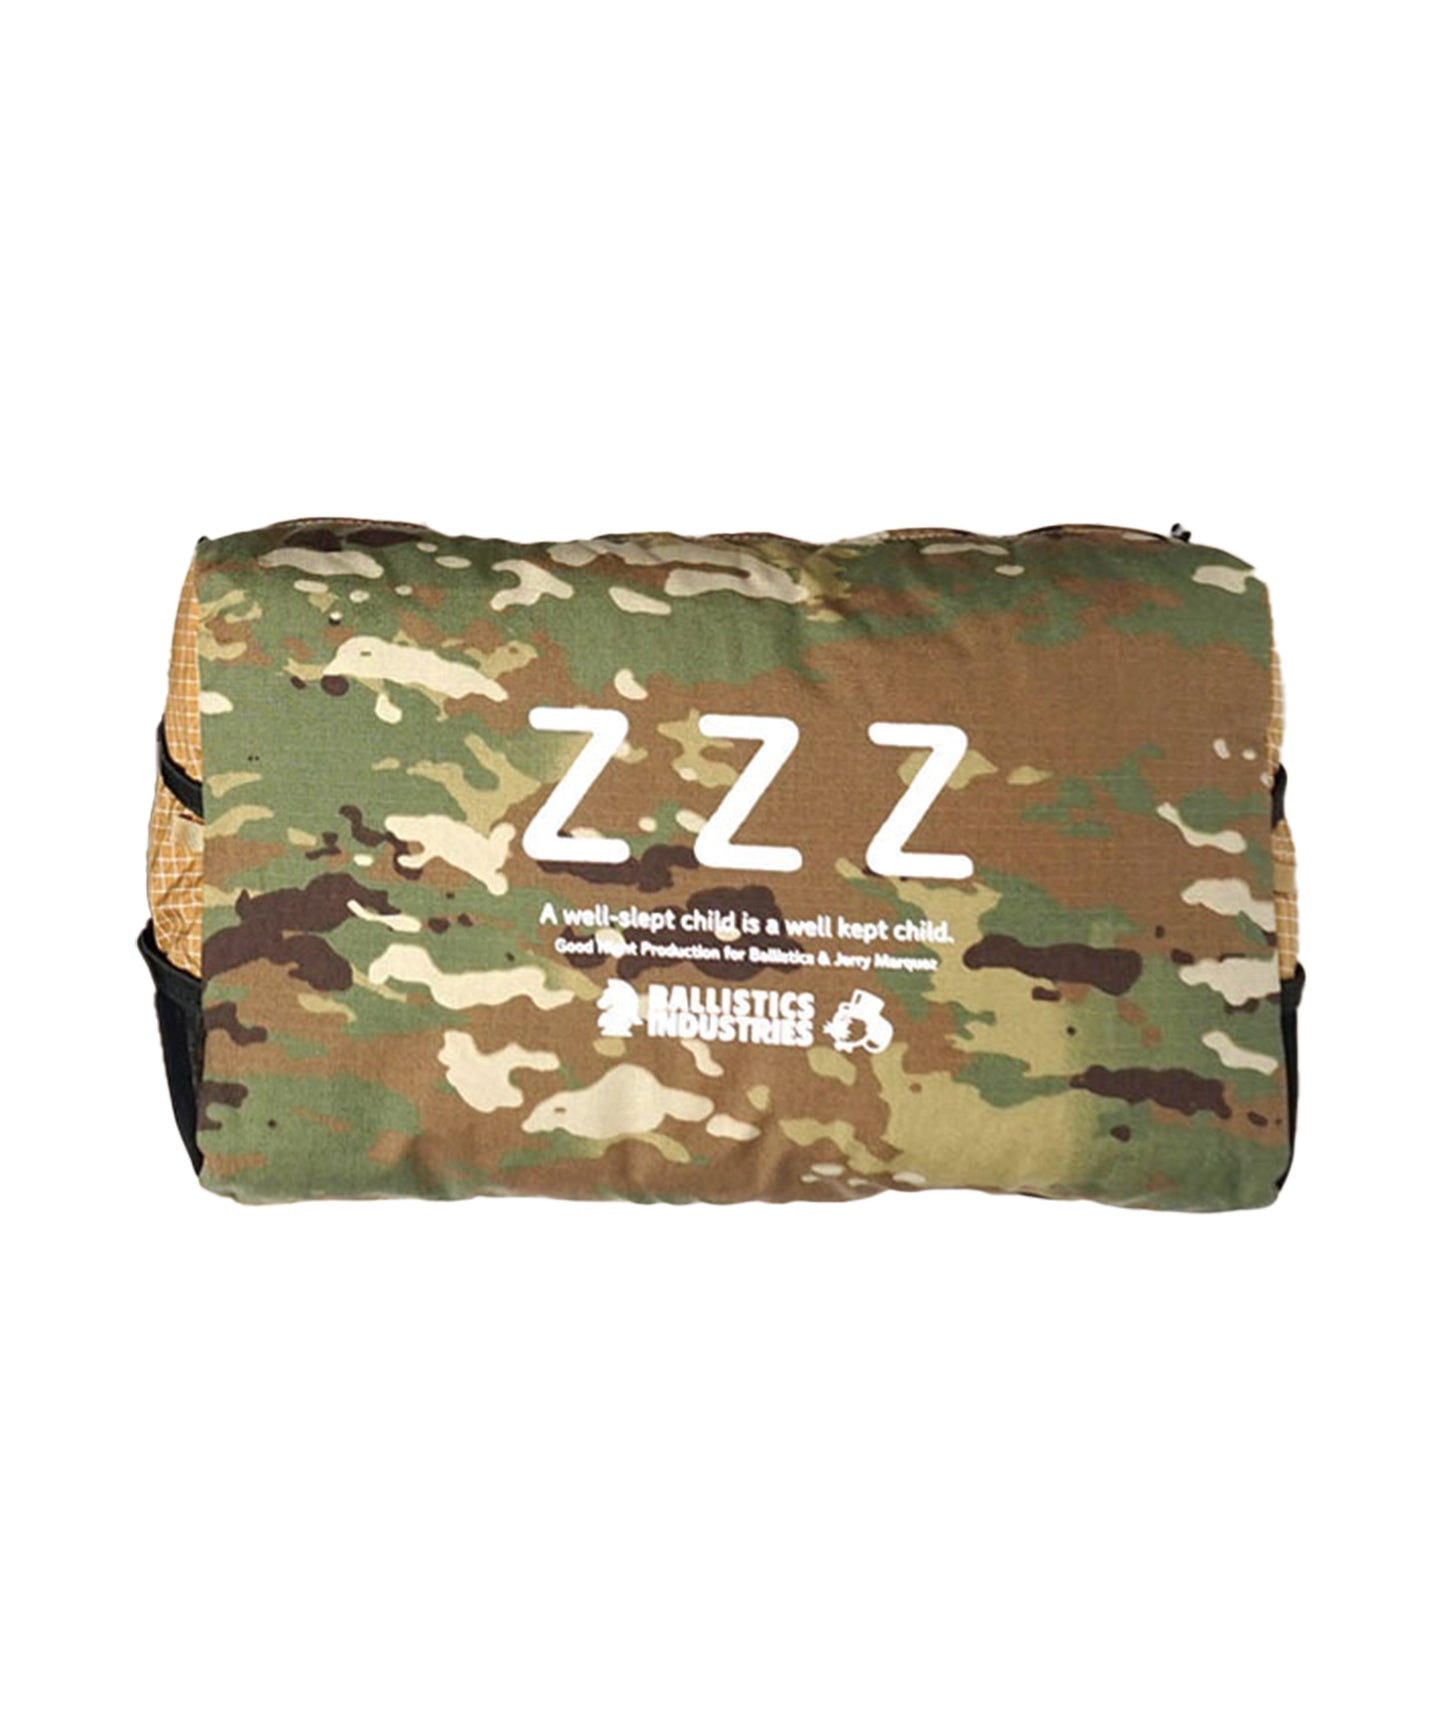 Ballistics Z Z Z JM Pillow & Case 露營枕頭